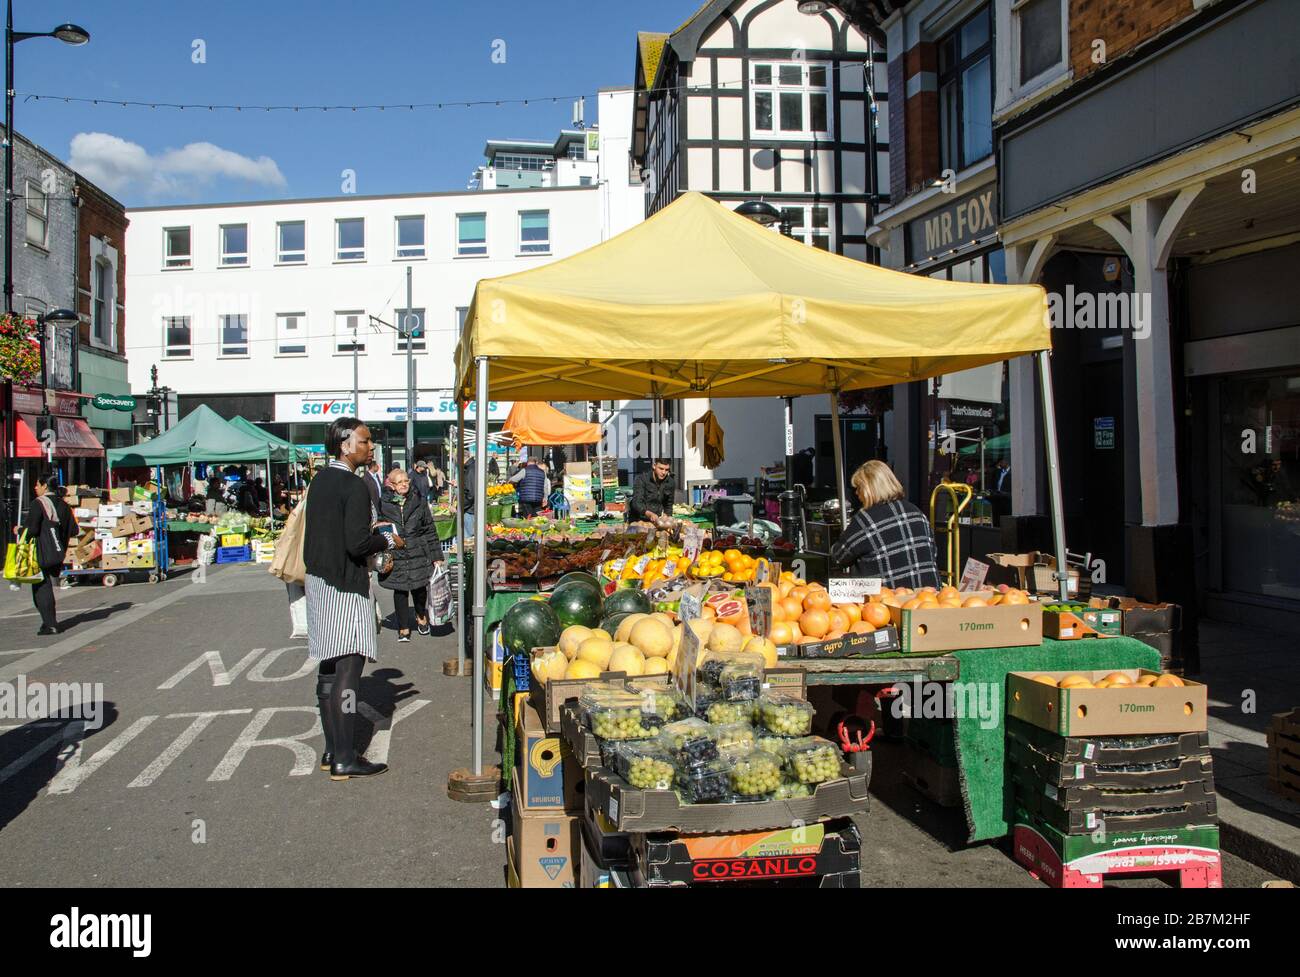 Londra, Regno Unito - 2 ottobre 2019: Acquirenti e stallholders presso il vivace Surrey Street Market a Croydon, Londra meridionale. Foto Stock